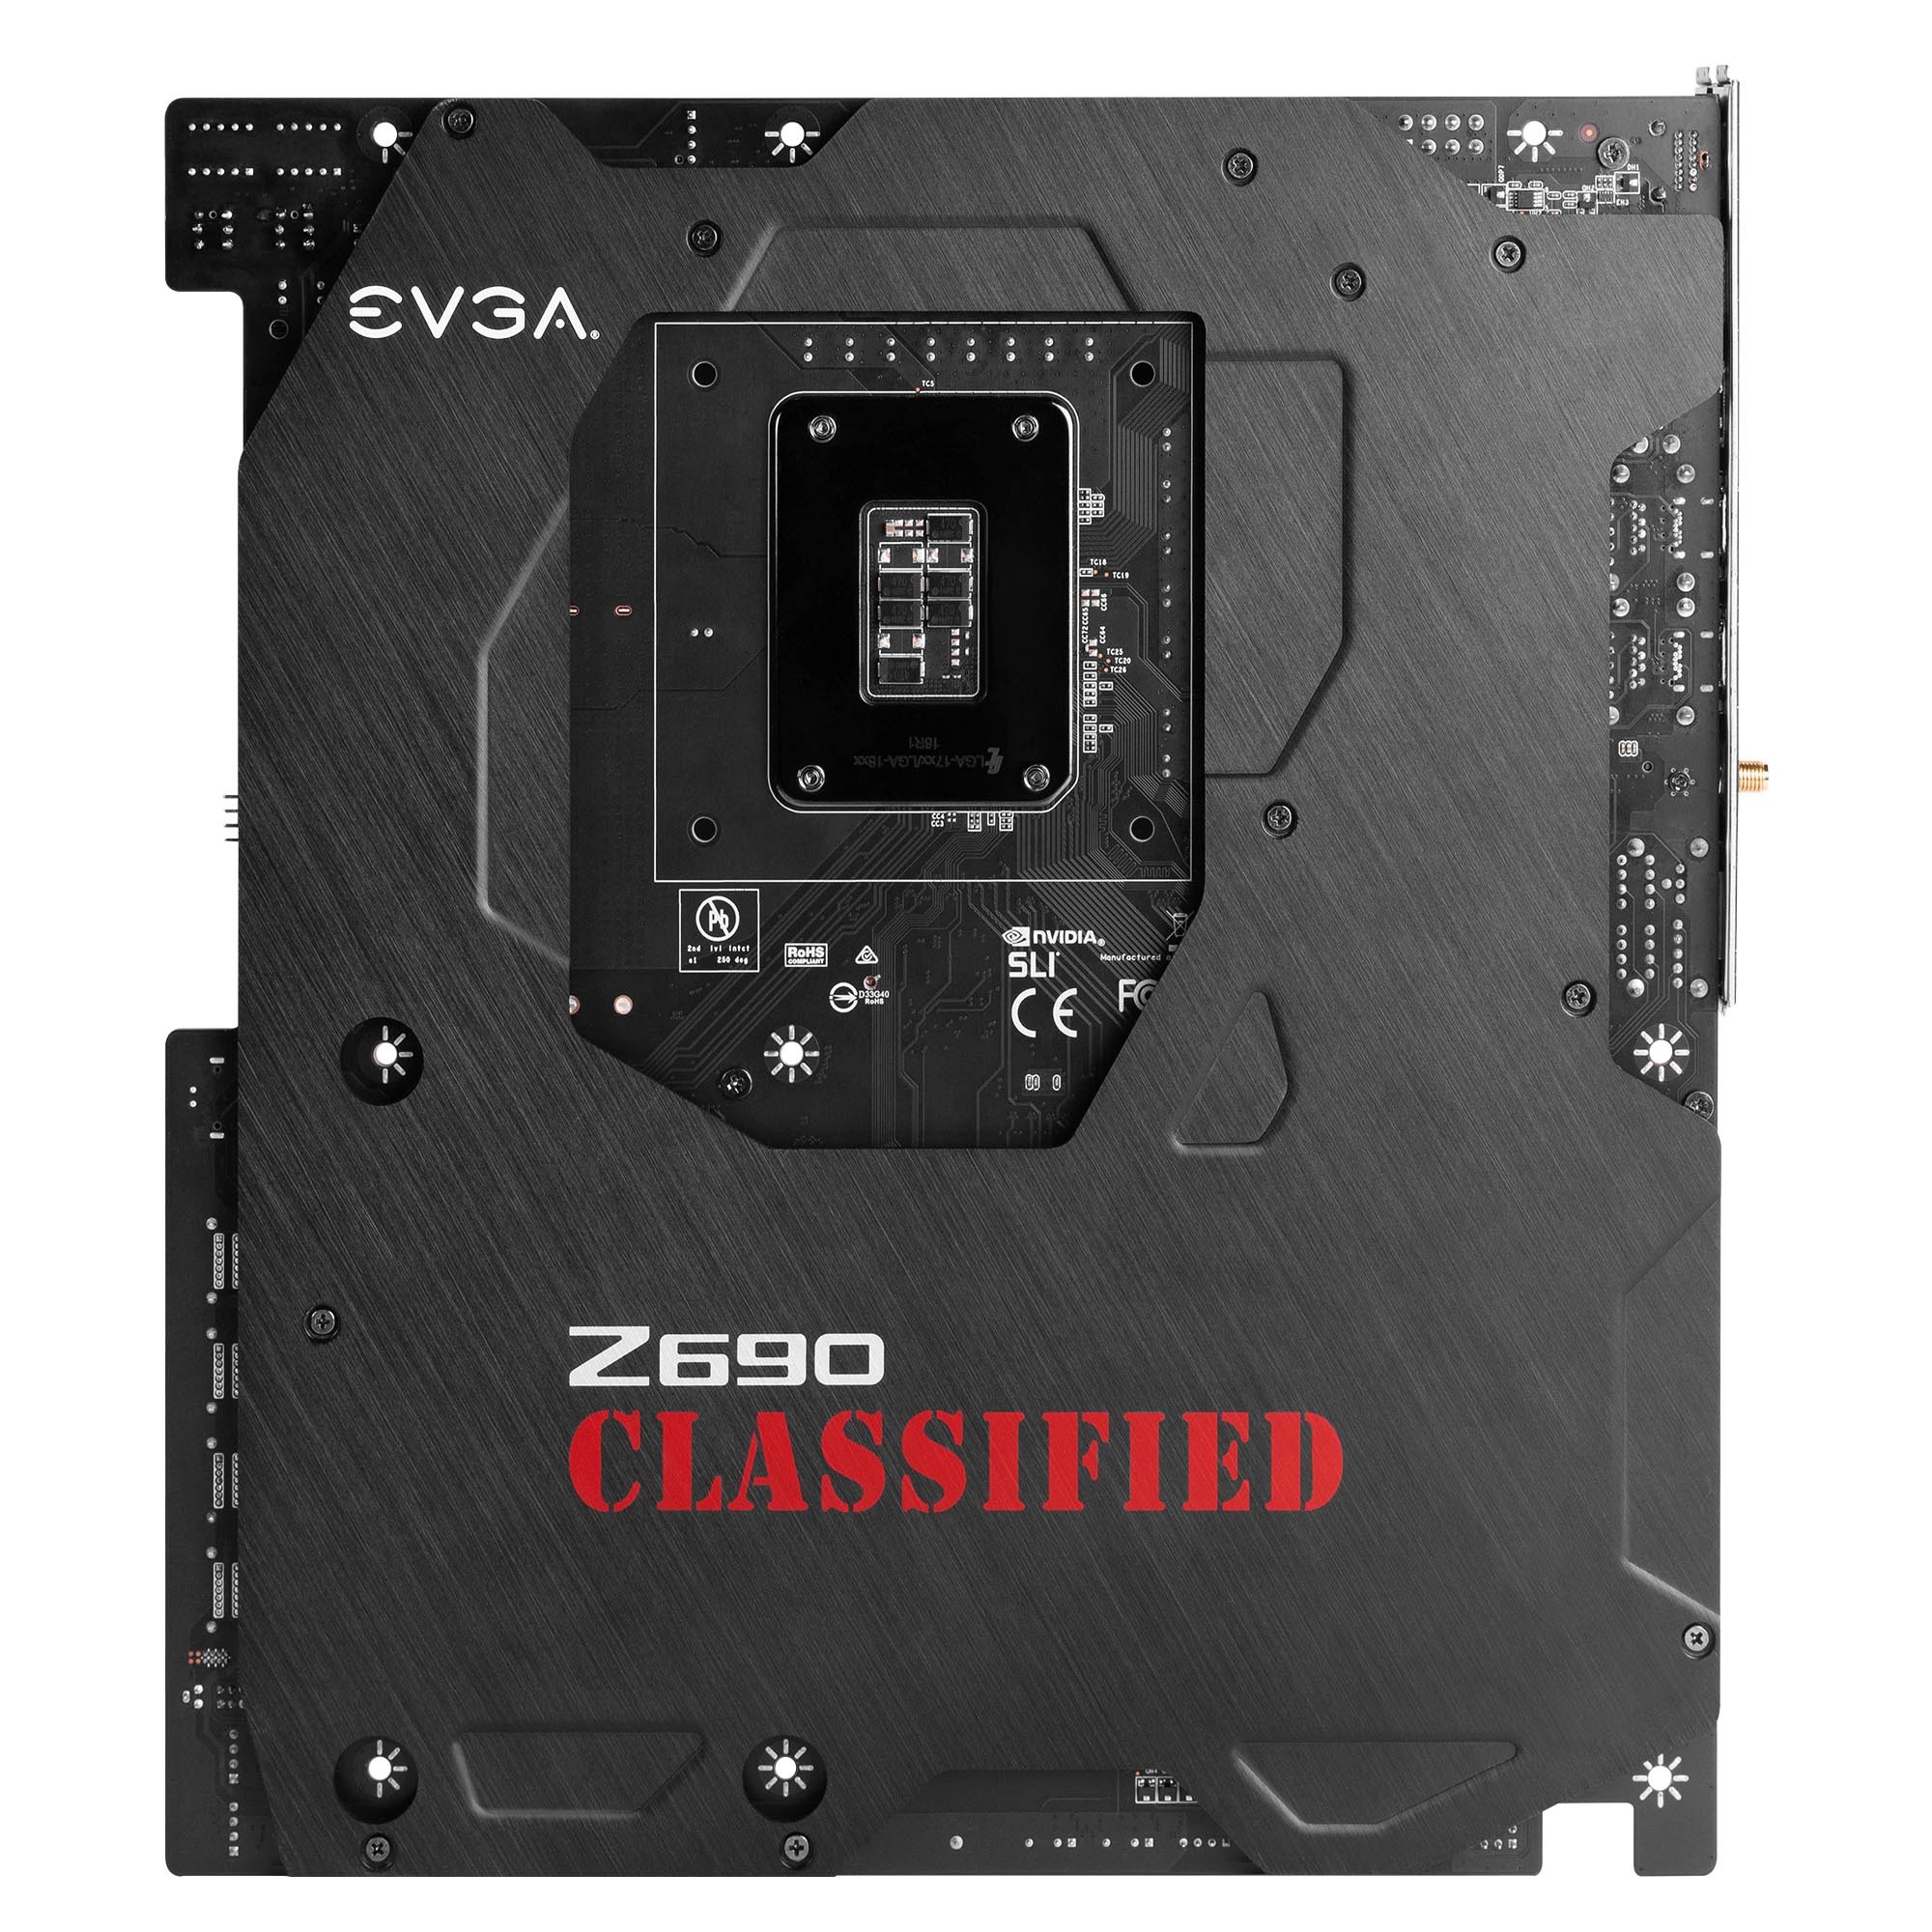 الكشف عن لوحة EVGA Z690 CLASSIFIED الجديدة بسعر 630 دولار